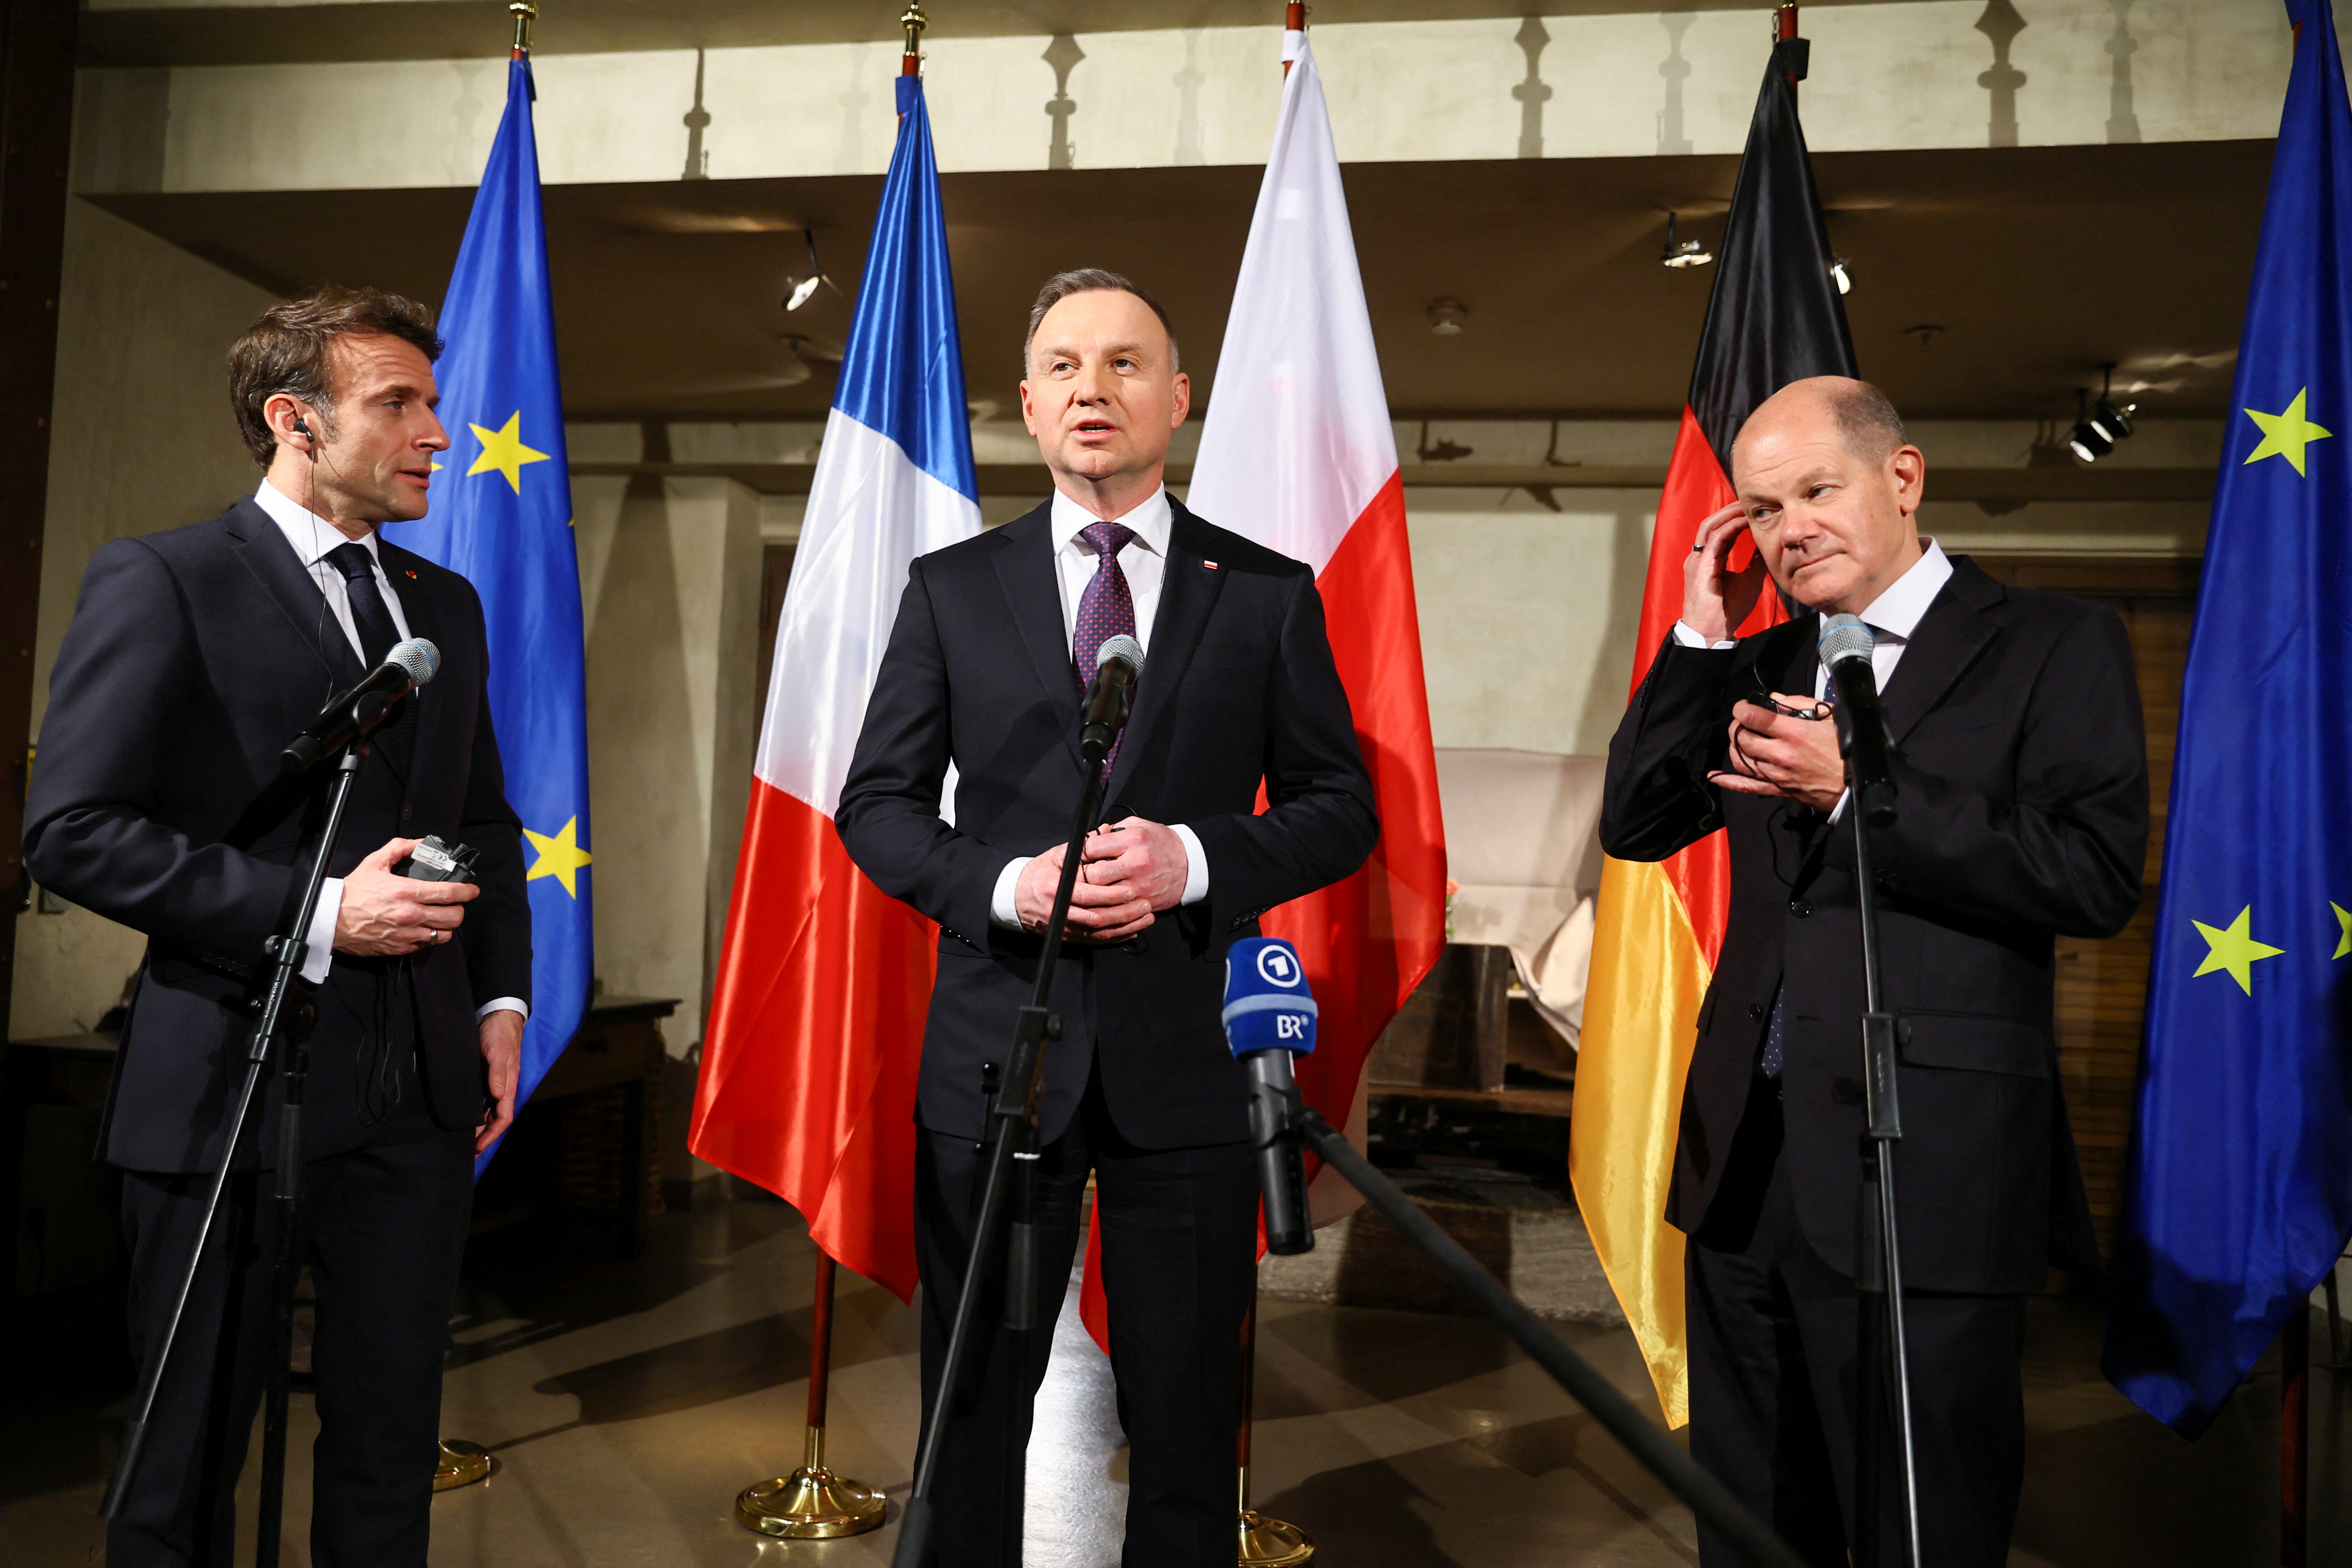 El presidente francés Emmanuel Macron, el canciller alemán Olaf Scholz y el presidente polaco Andrzej Duda asisten a una declaración conjunta durante la Conferencia de Seguridad de Munich, en Munich, Alemania. REUTERS/Wolfgang Rattay